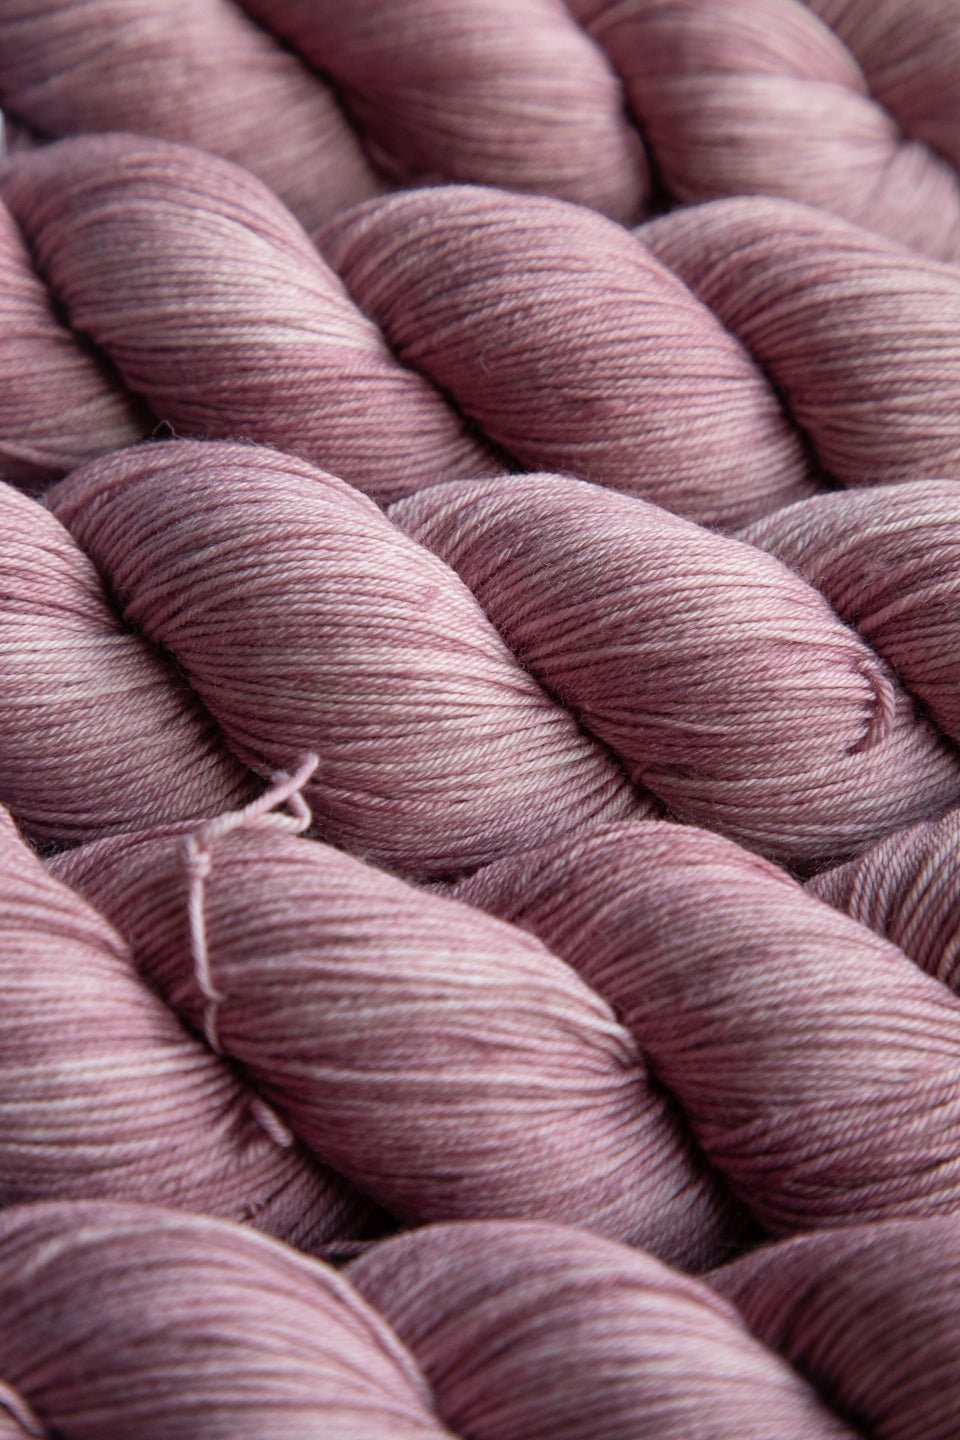 Rhapsody- 4ply - Hand-dyed yarn